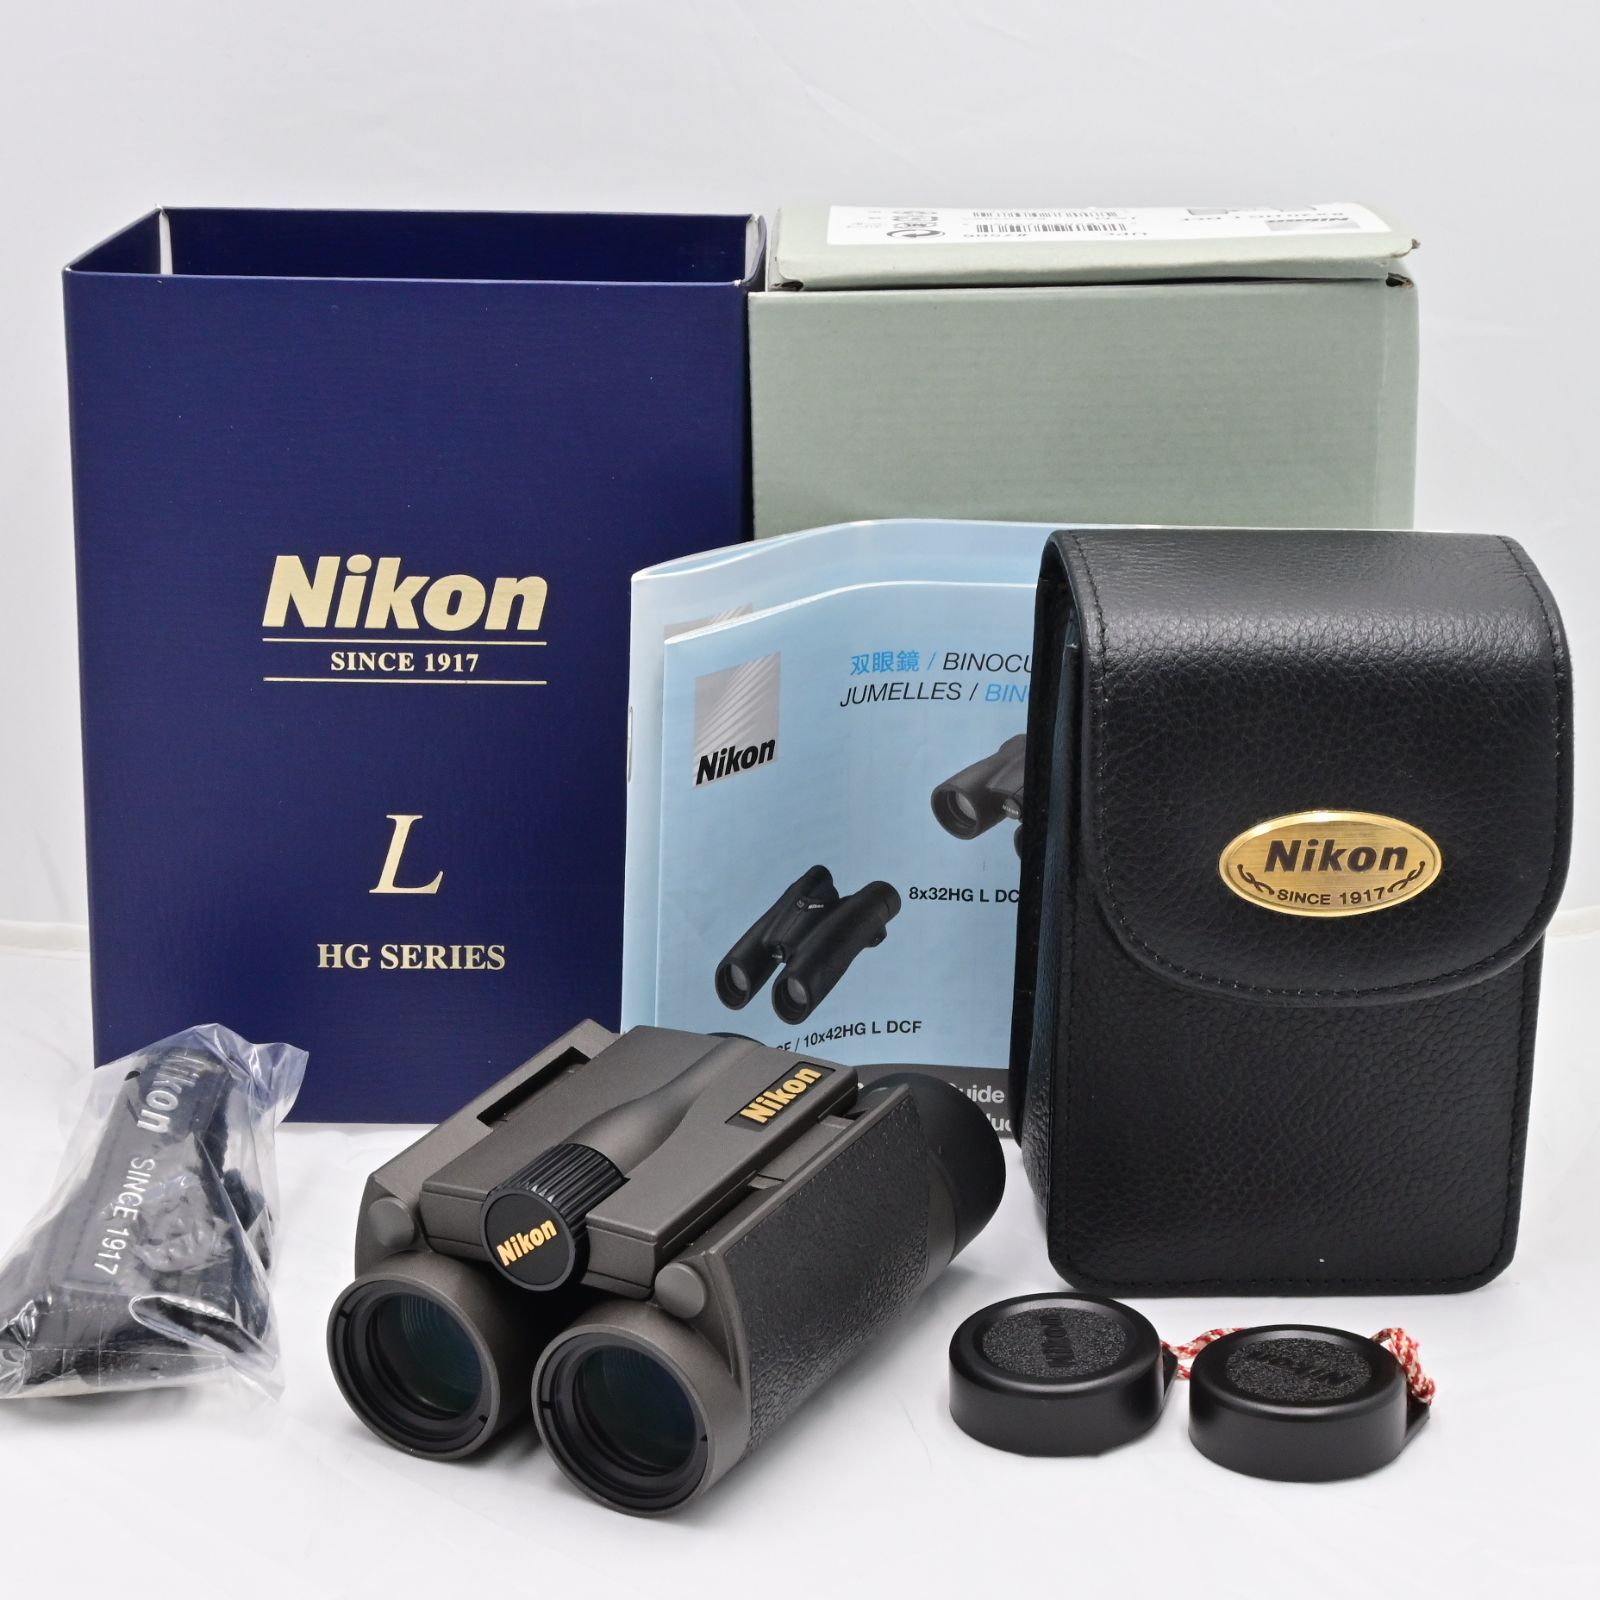 ニコン Nikon 双眼鏡 HG Lシリーズ 8×20HG L DCF ダハプリズム式 8倍20